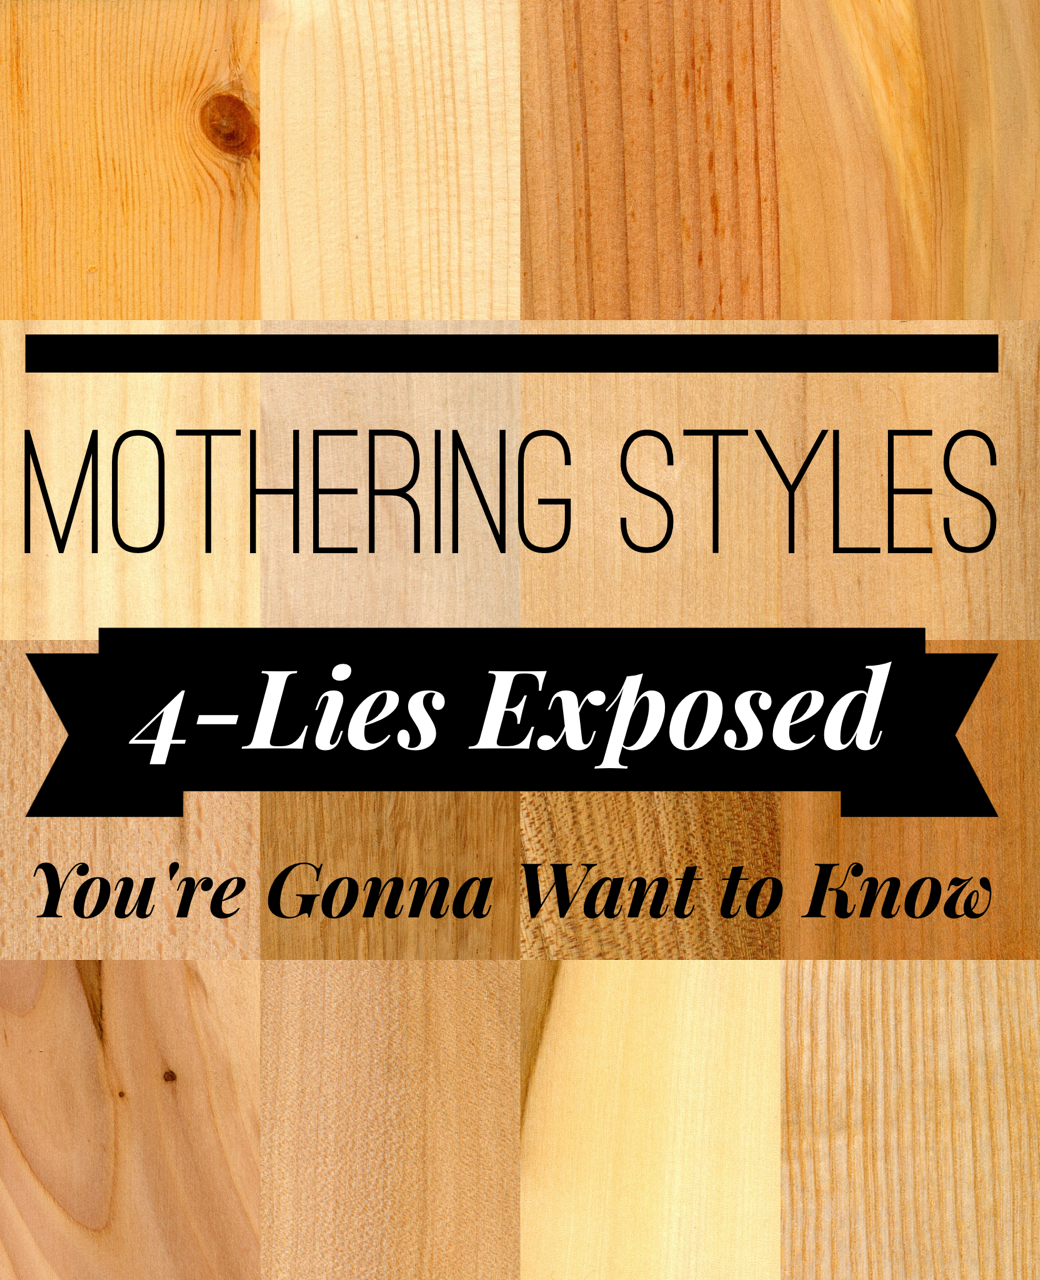 lies about motherhood